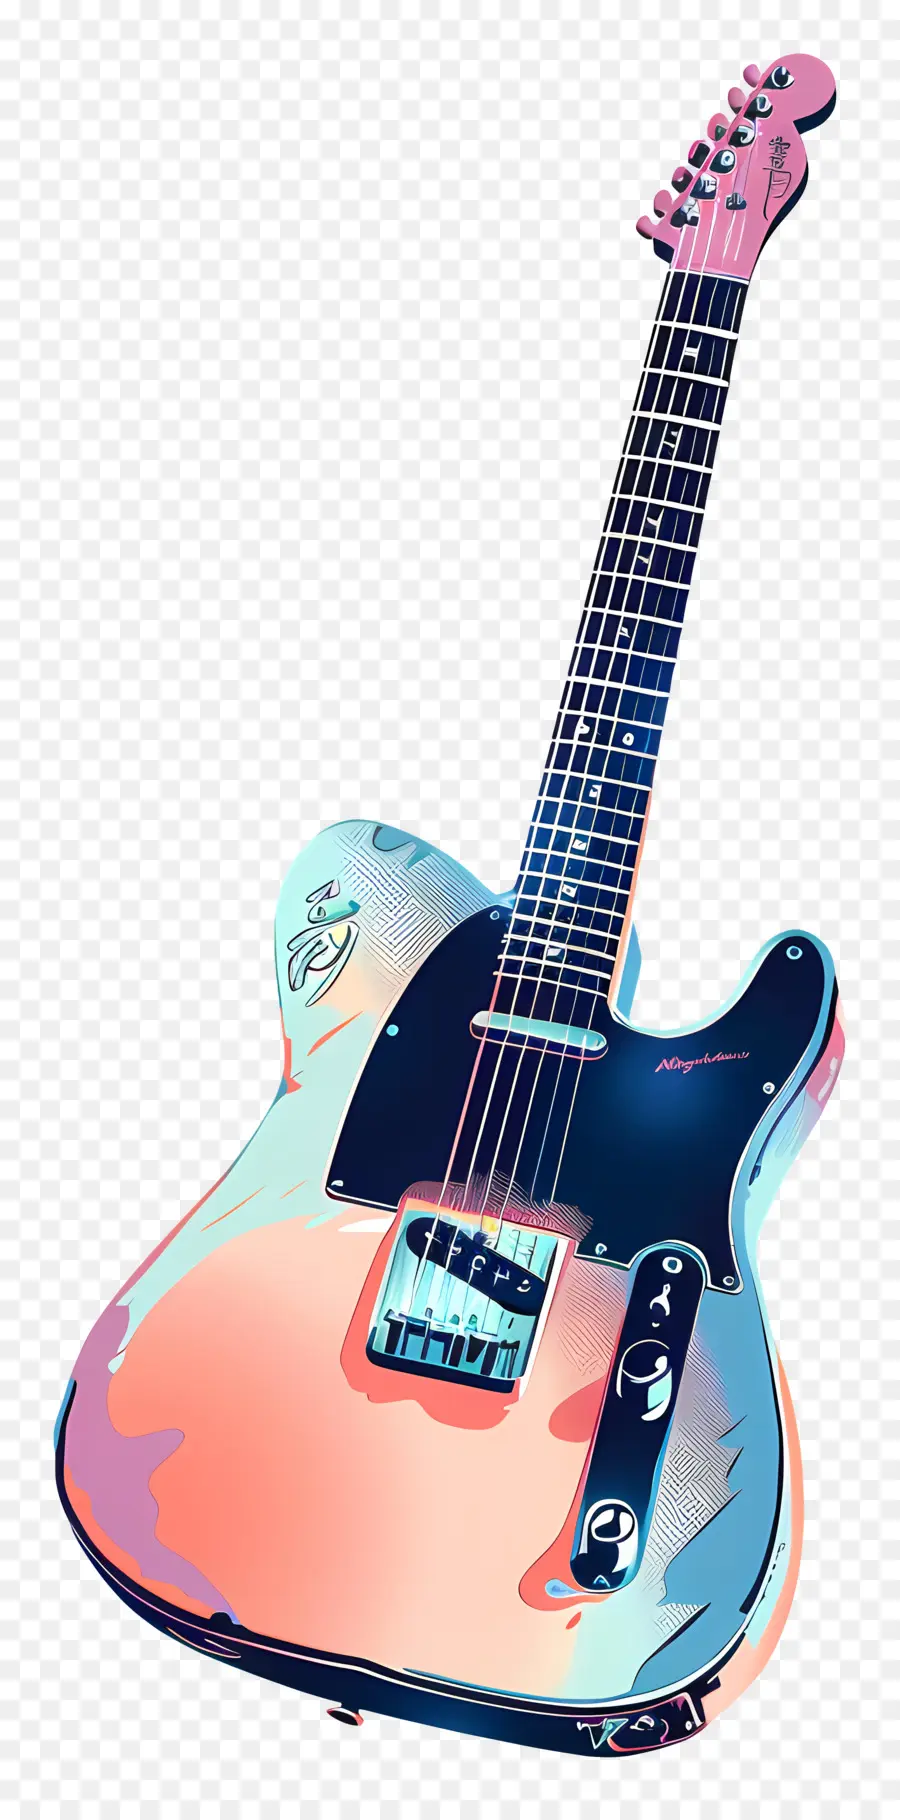 Guitarra Elétrica，Fender Telecaster PNG